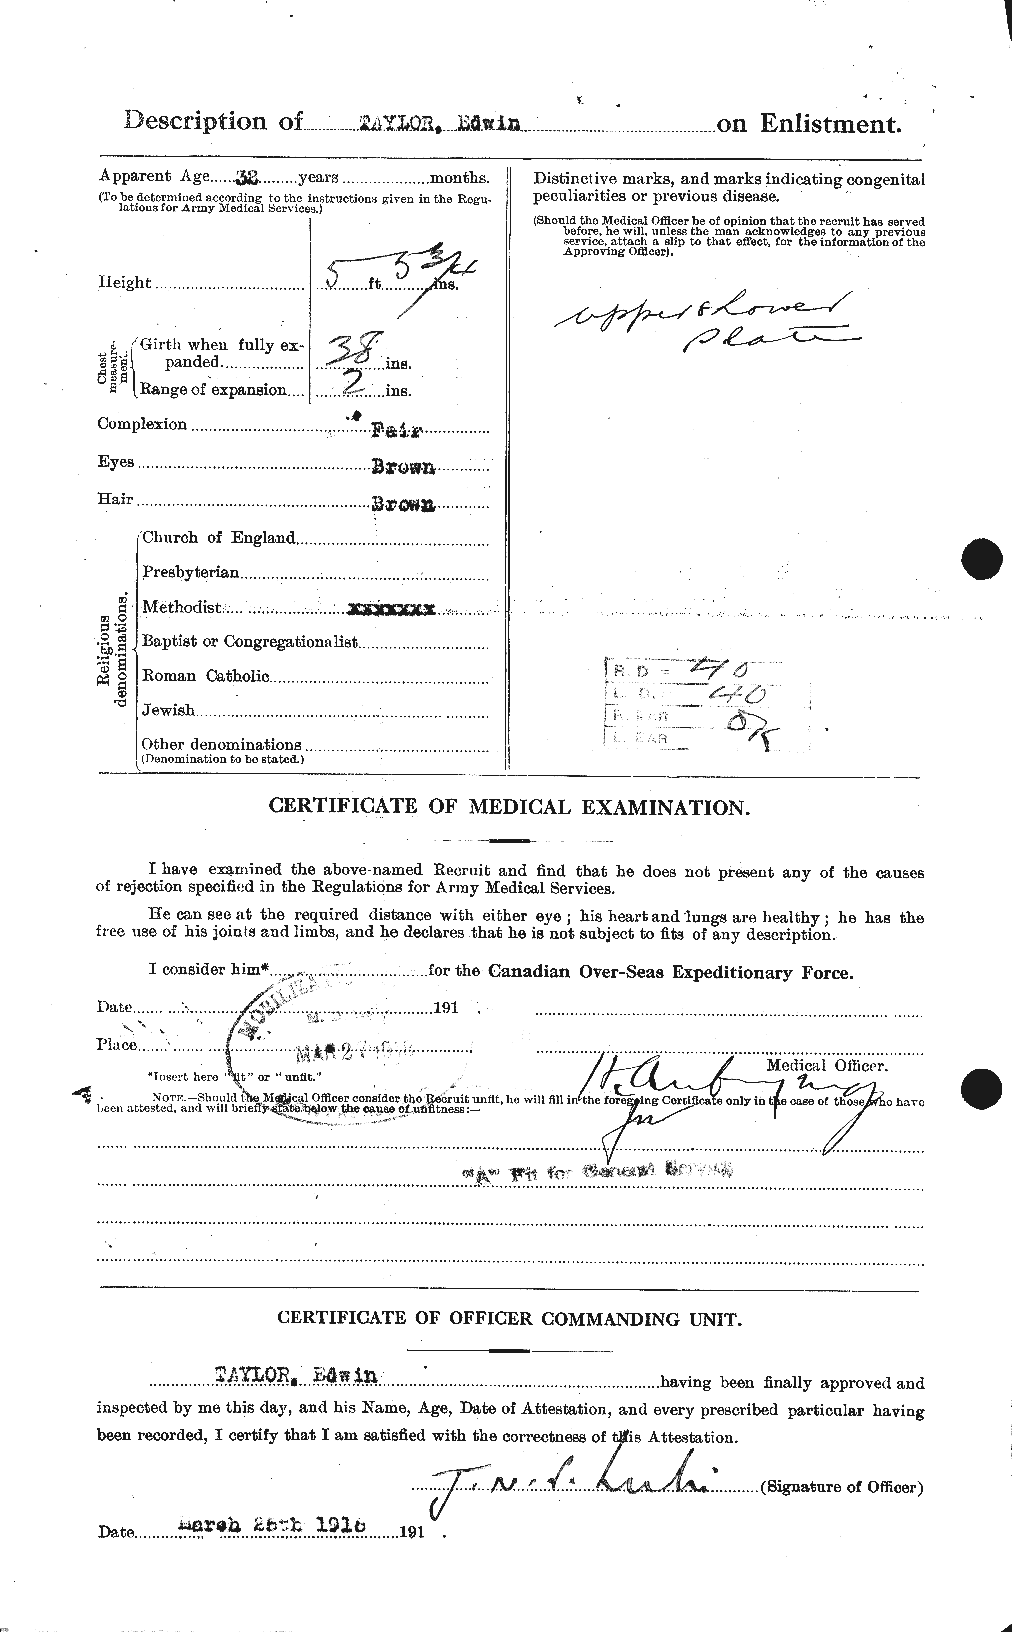 Dossiers du Personnel de la Première Guerre mondiale - CEC 627335b